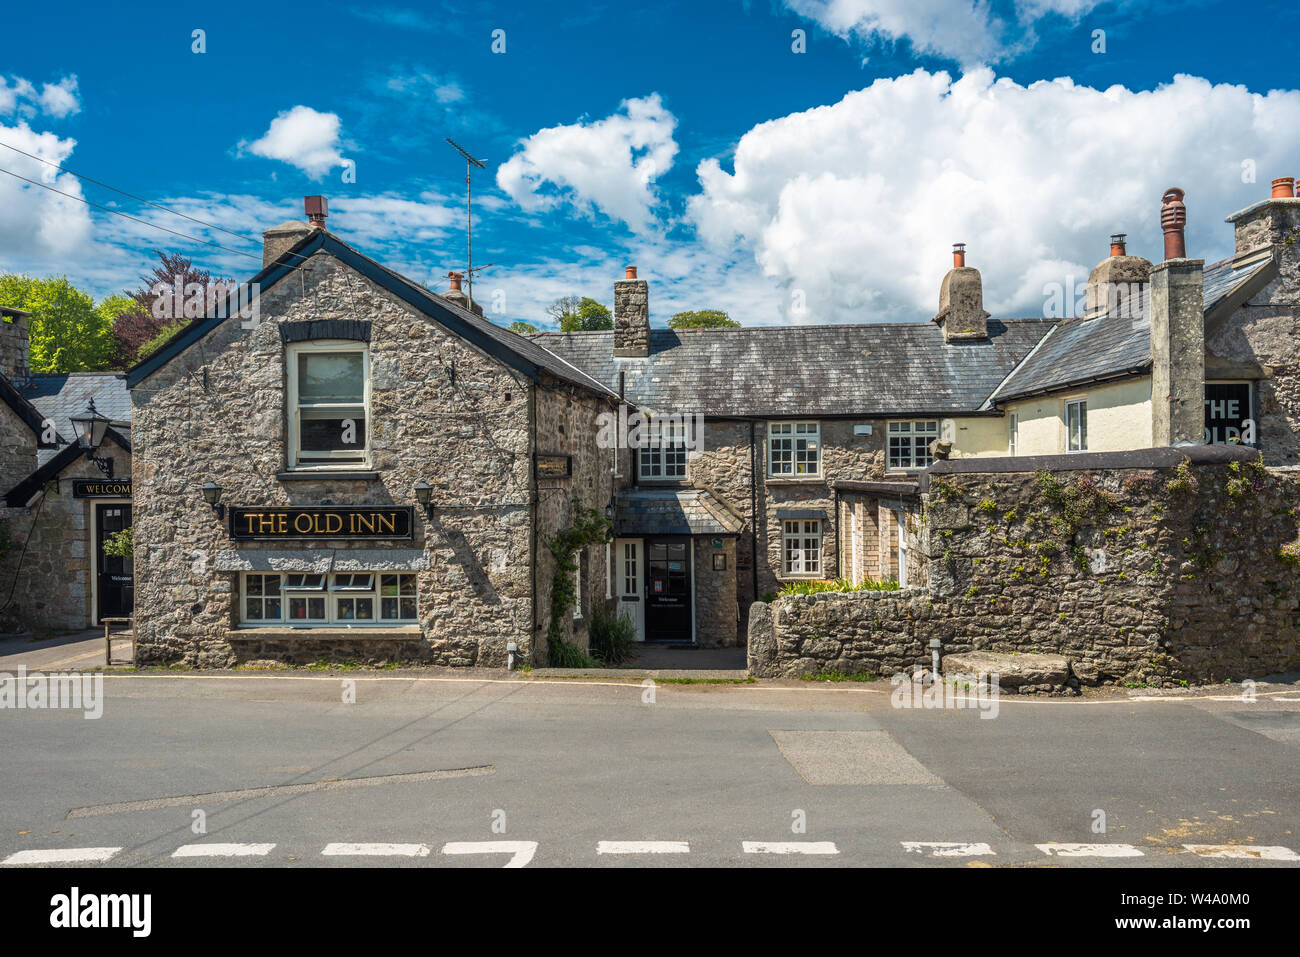 The Old Inn, Widecombe in the Moor, Dartmoor, Devon, England, UK Stock Photo